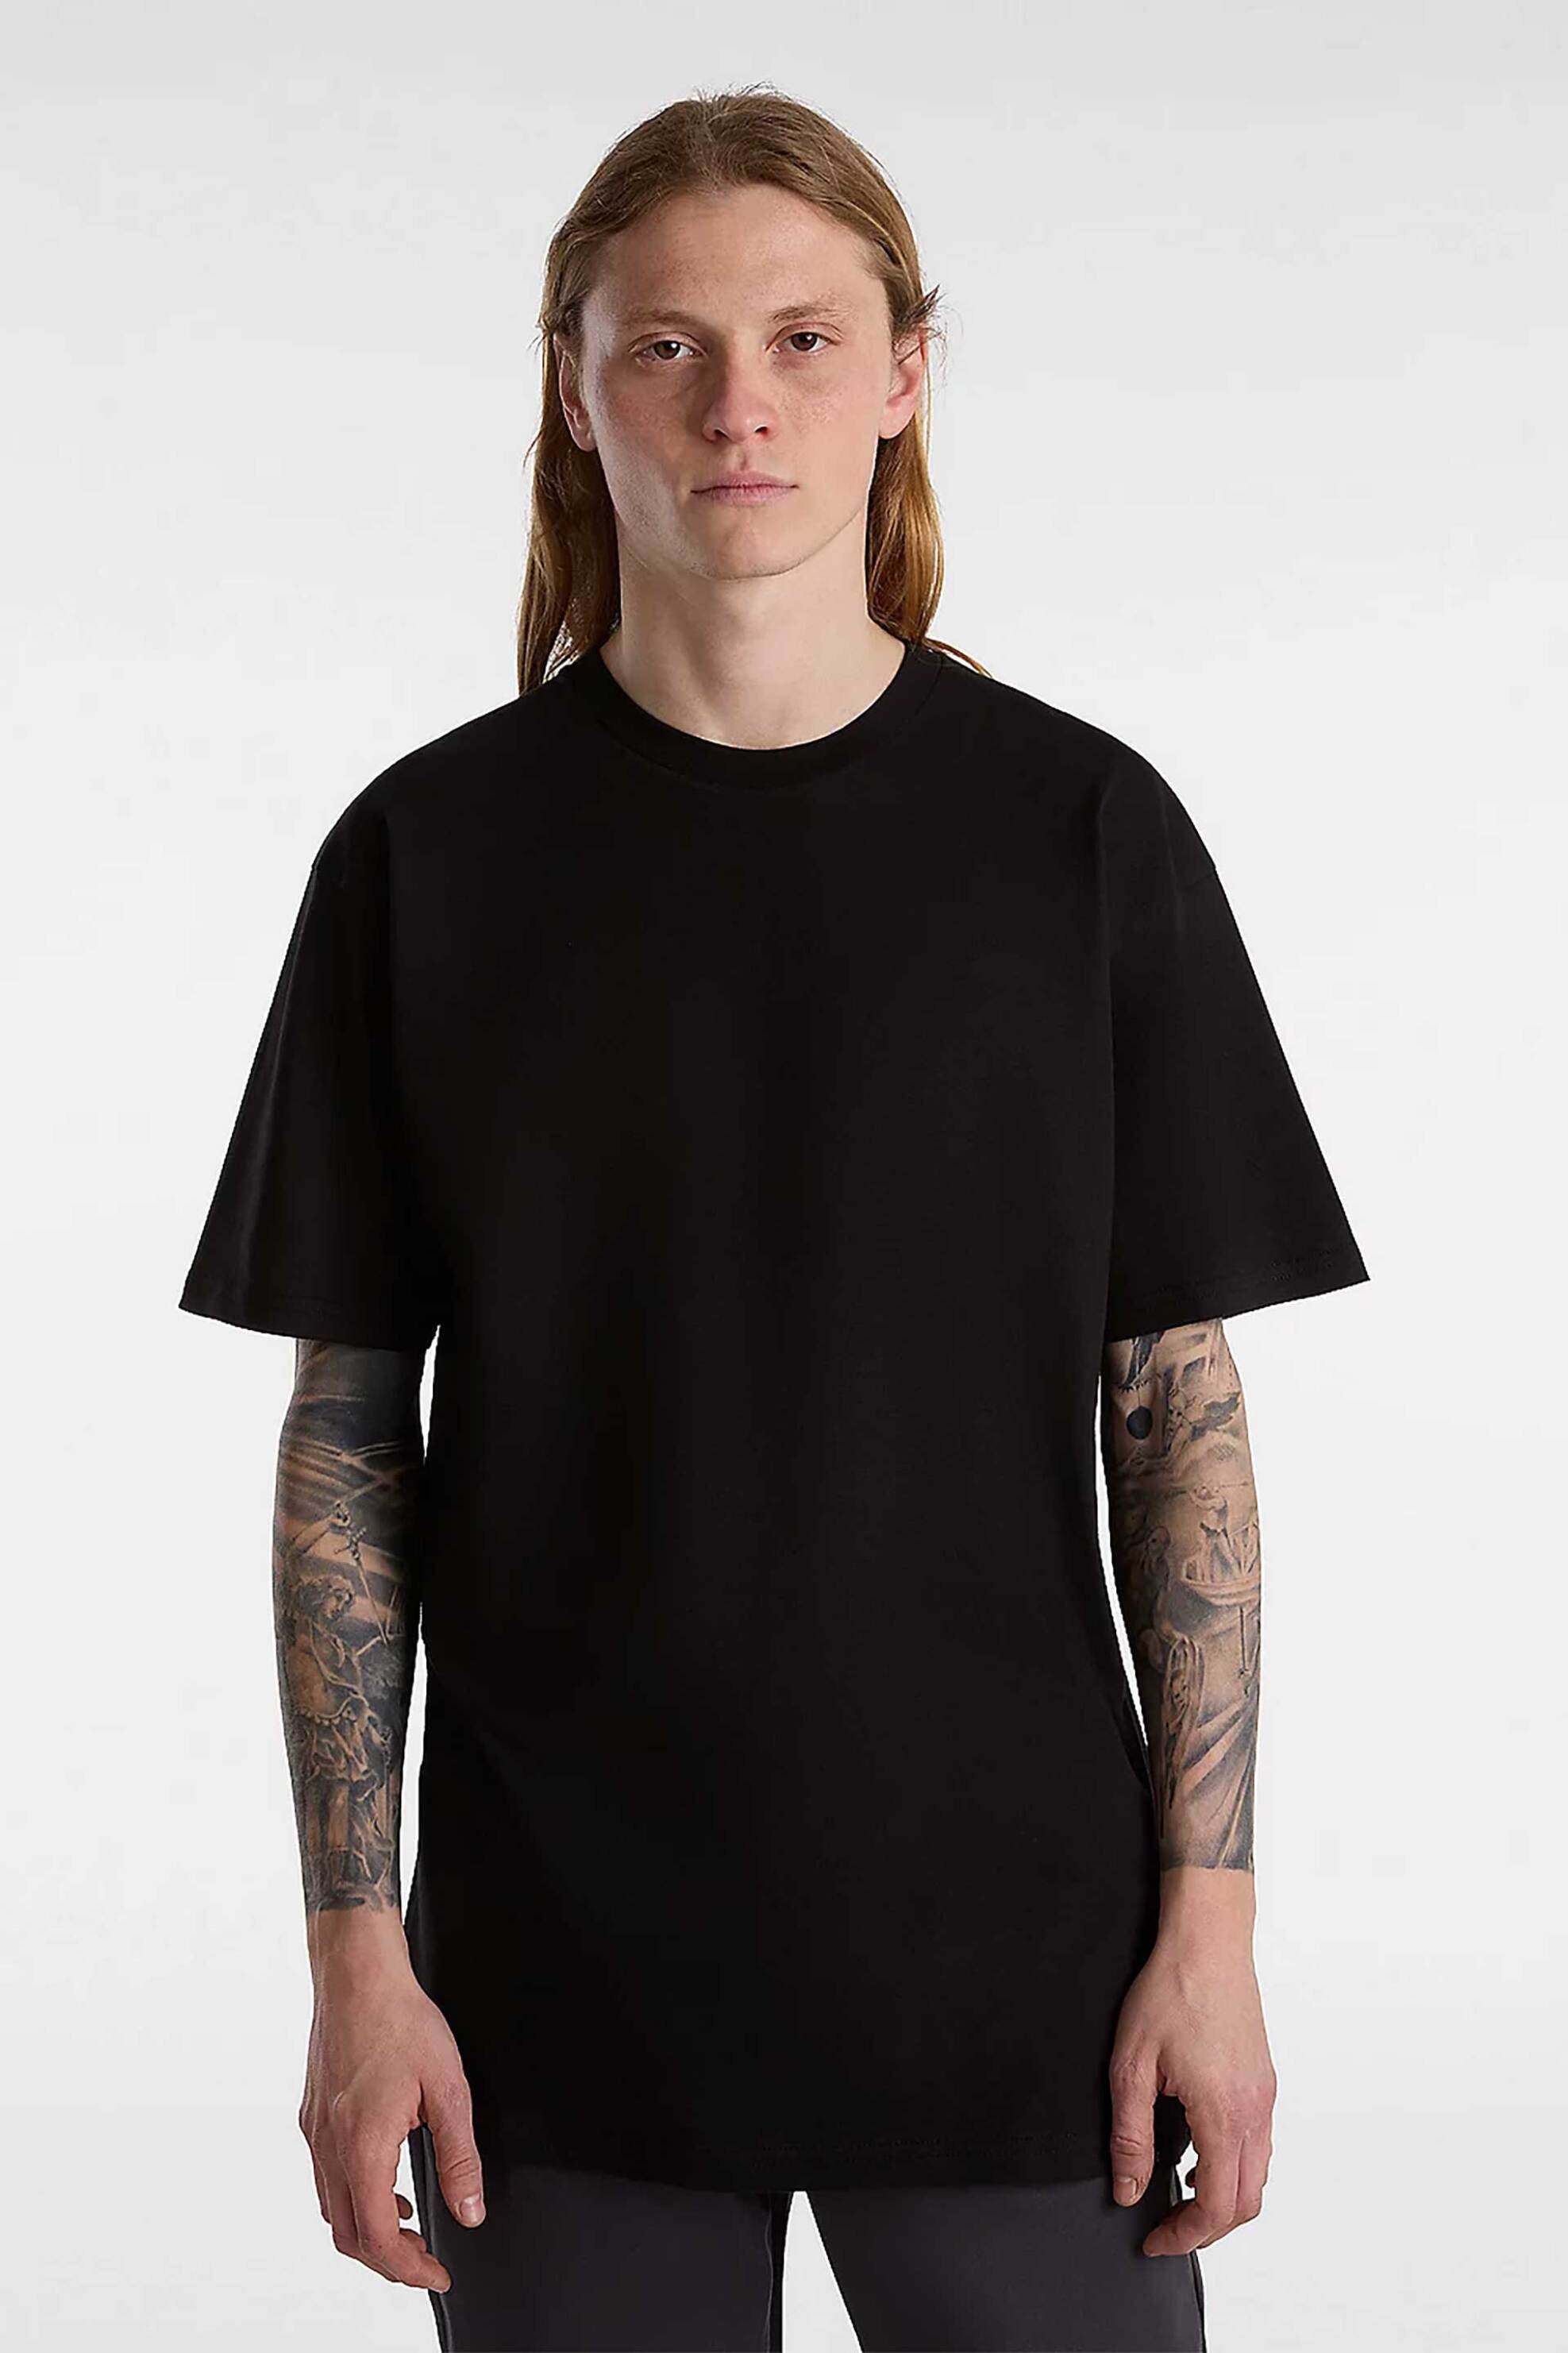 Ανδρική Μόδα > Ανδρικά Ρούχα > Ανδρικές Μπλούζες > Ανδρικά T-Shirts Vans σετ ανδρικά μονόχρωμα T-shirts "Basic" (3 τεμάχια) - VN000KHDBLK1 Μαύρο